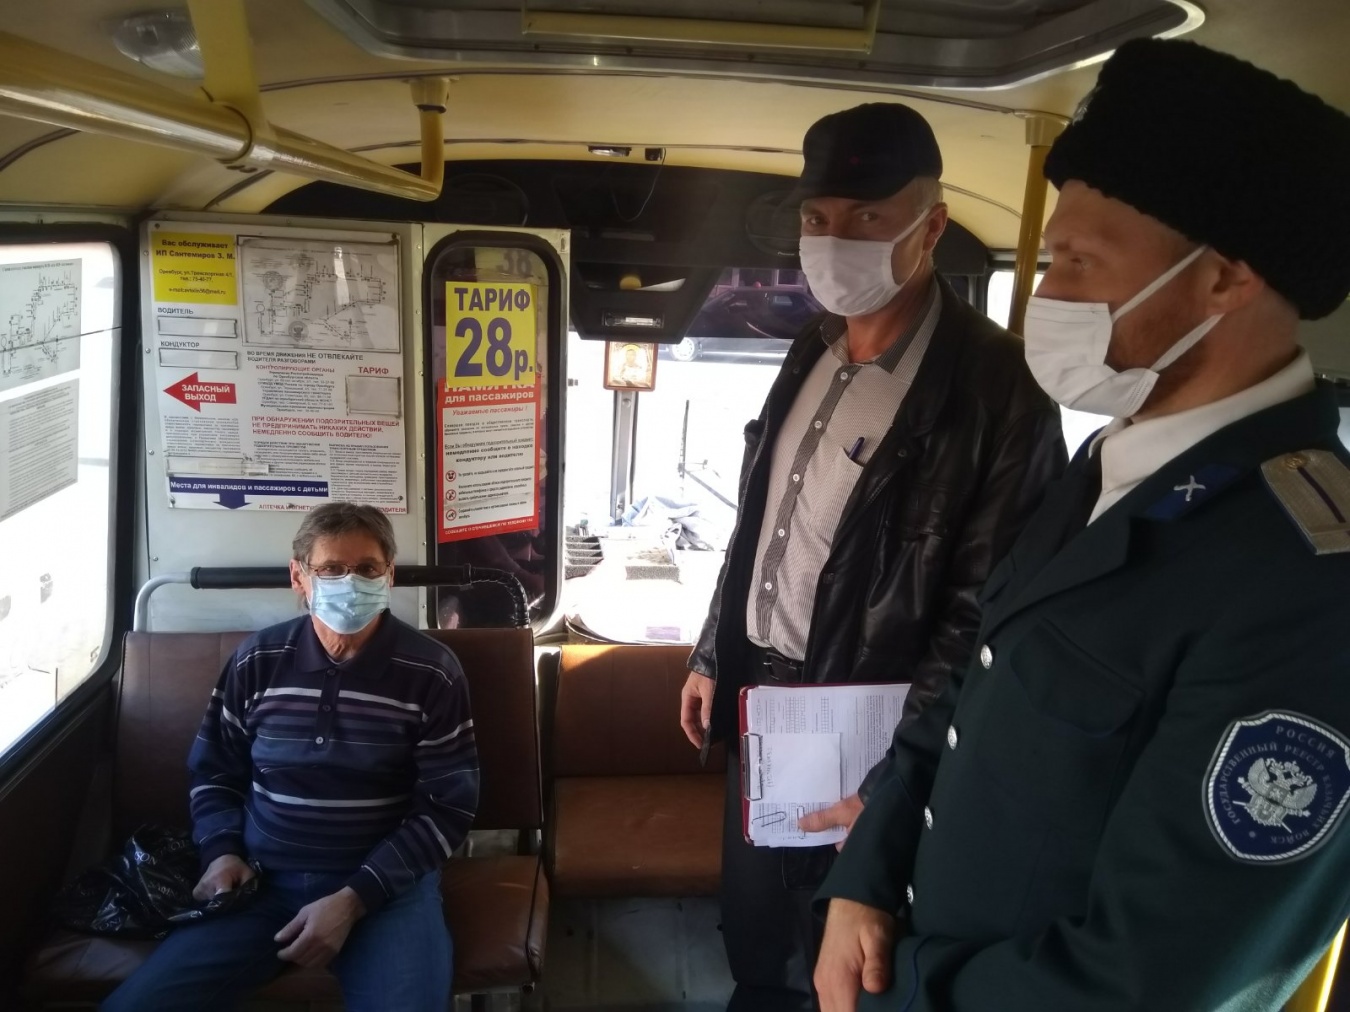 Добровольная дружина: казаки Оренбургского городского общества патрулируют в общественном транспорте